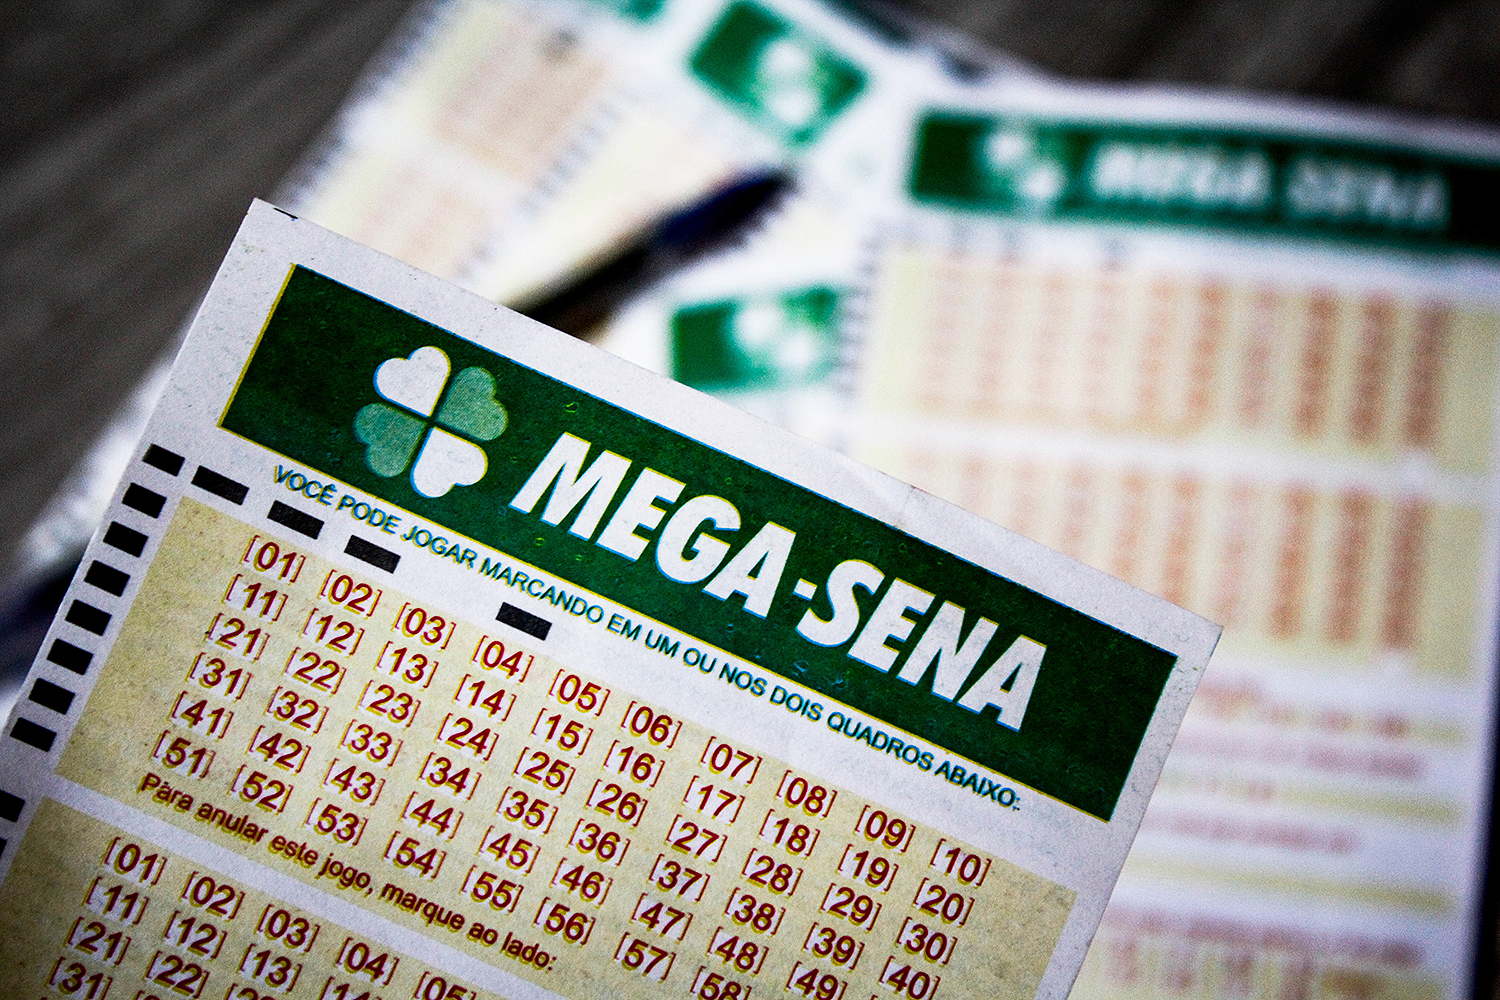 Mega-sena pode pagar R$ 19 milhões no sorteio deste sábado